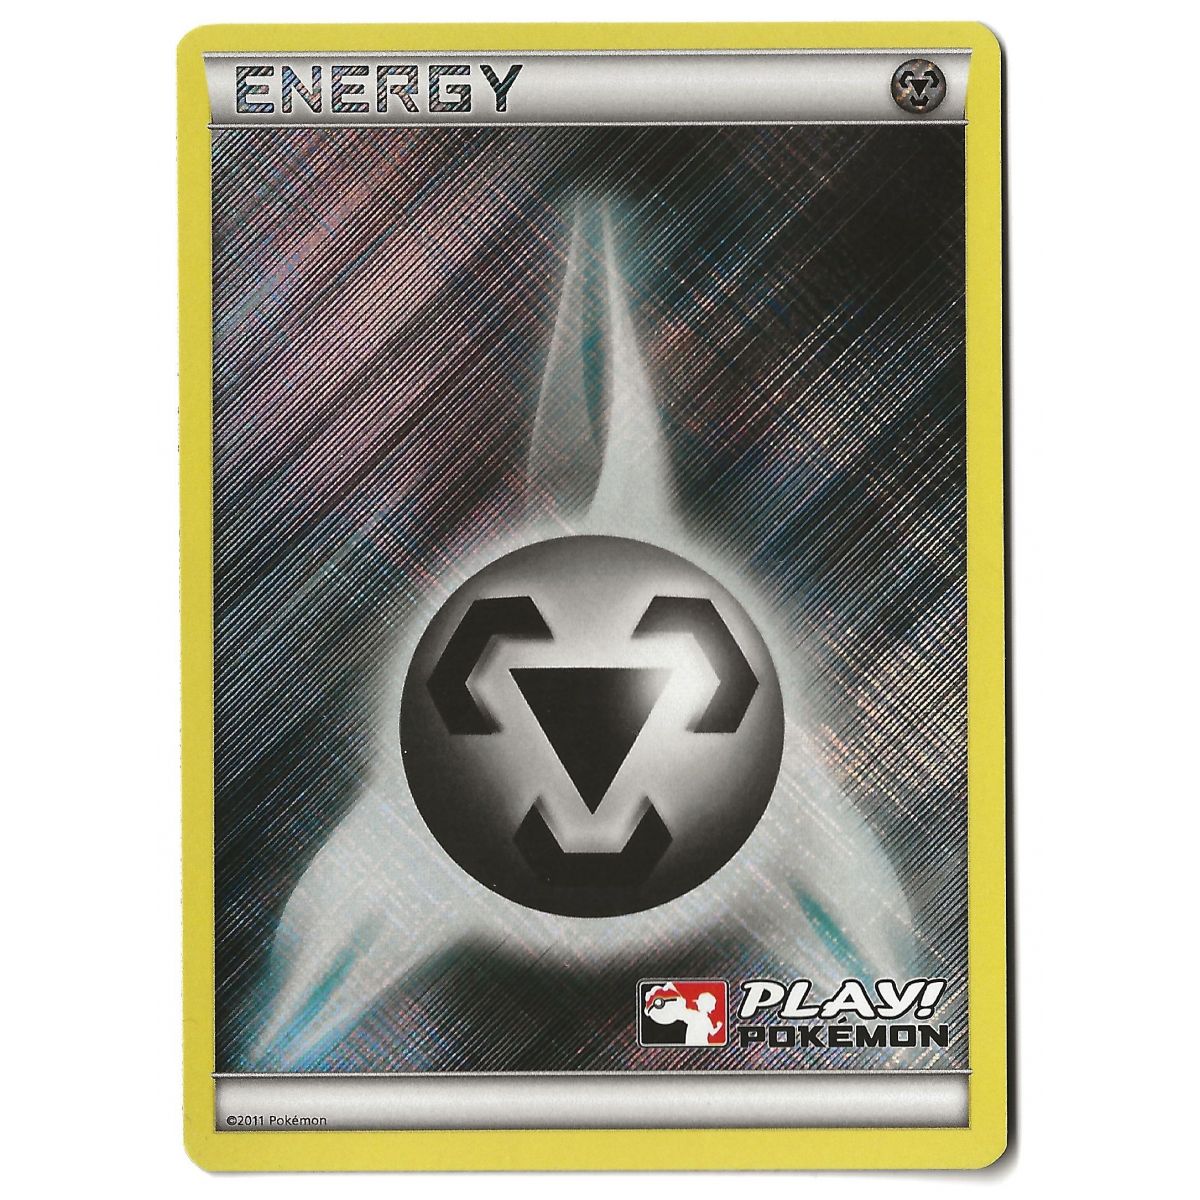 Energy Metal Play! Pokémon - Reverse Rare - 2011